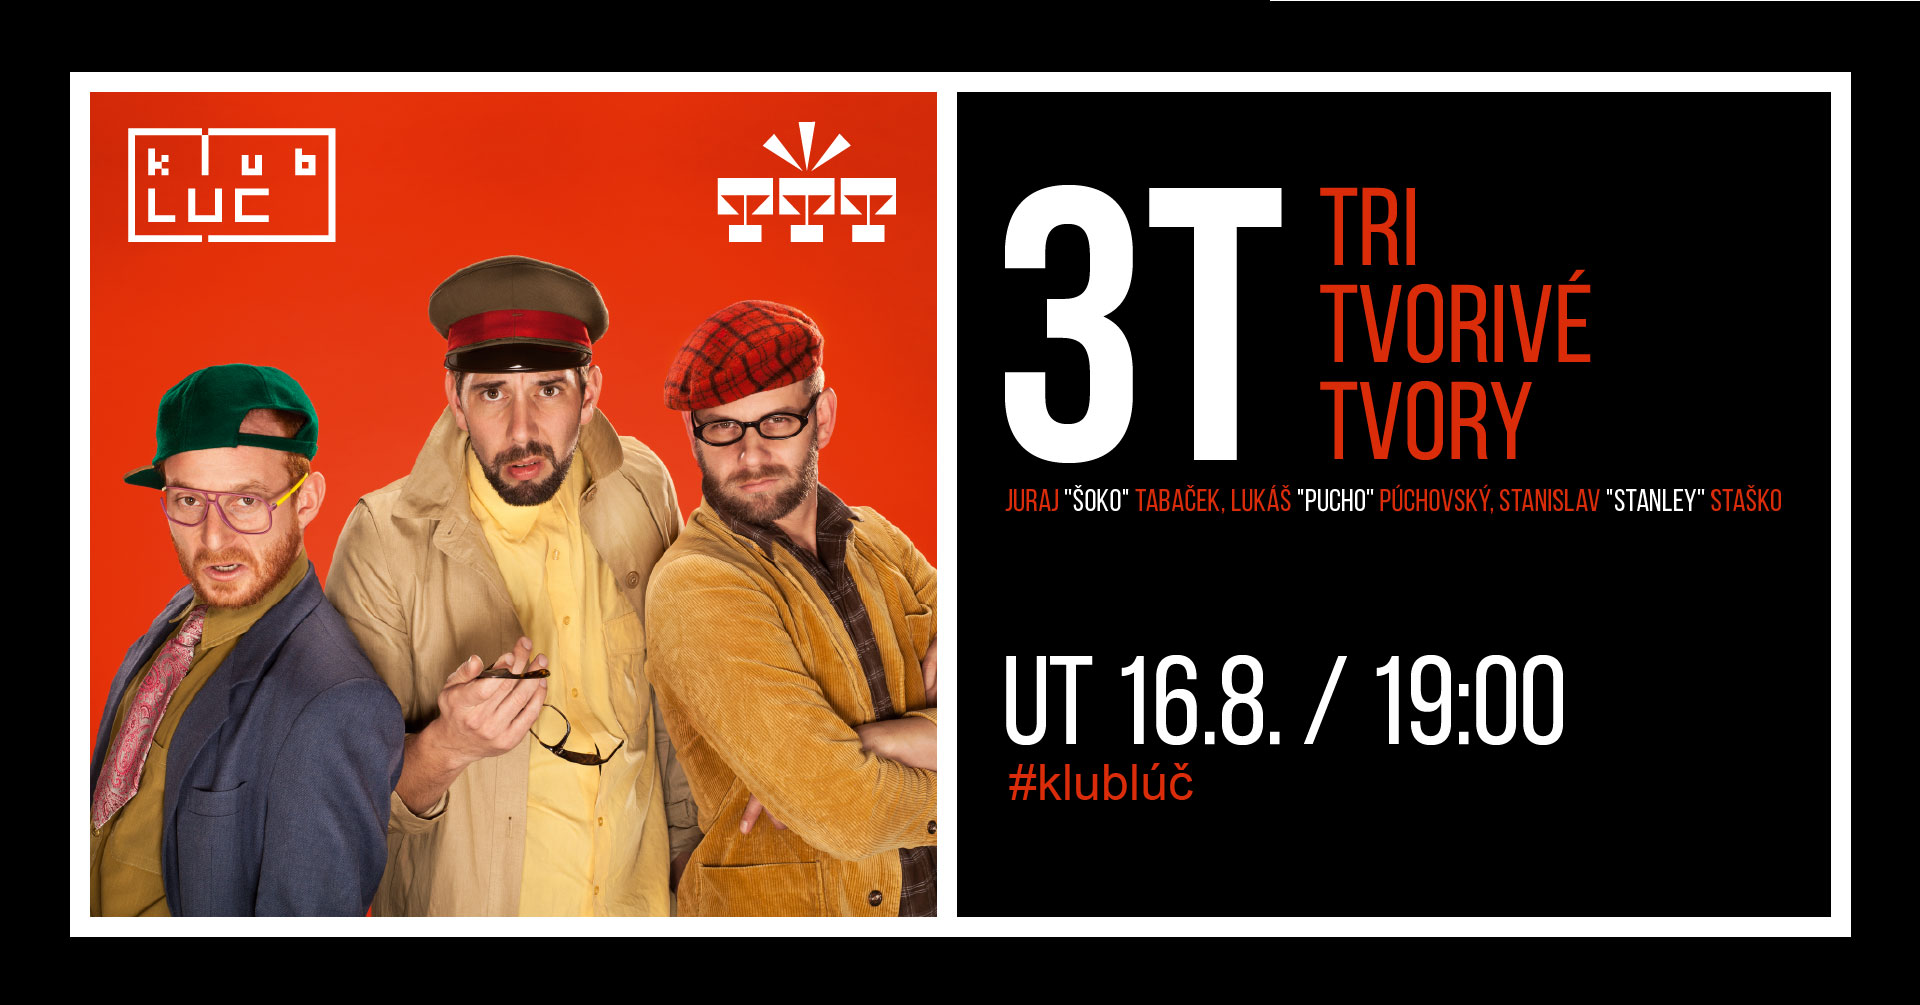 3T- Tri Tvorivé Tvory v Trenčíne Klub Lúč